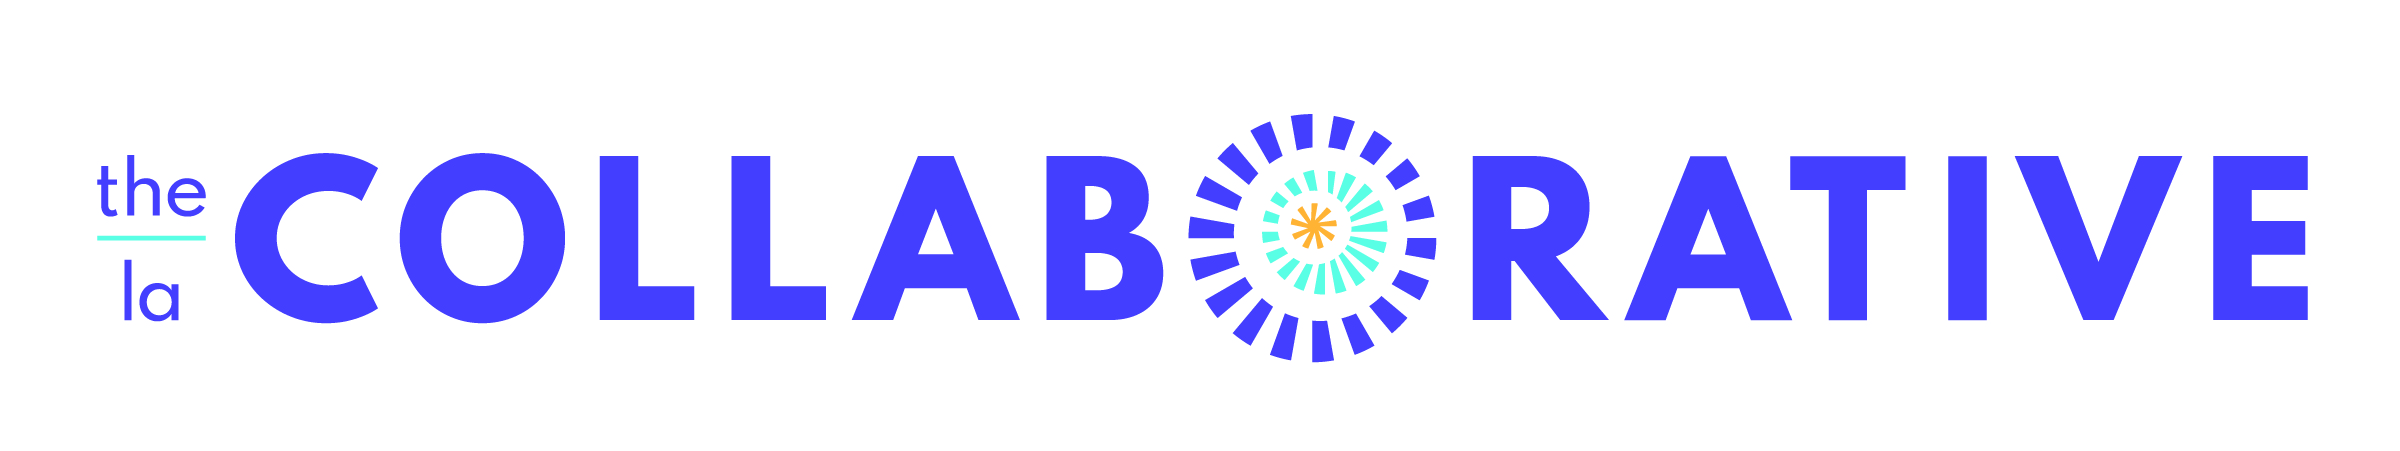 The/La Collaborative logo